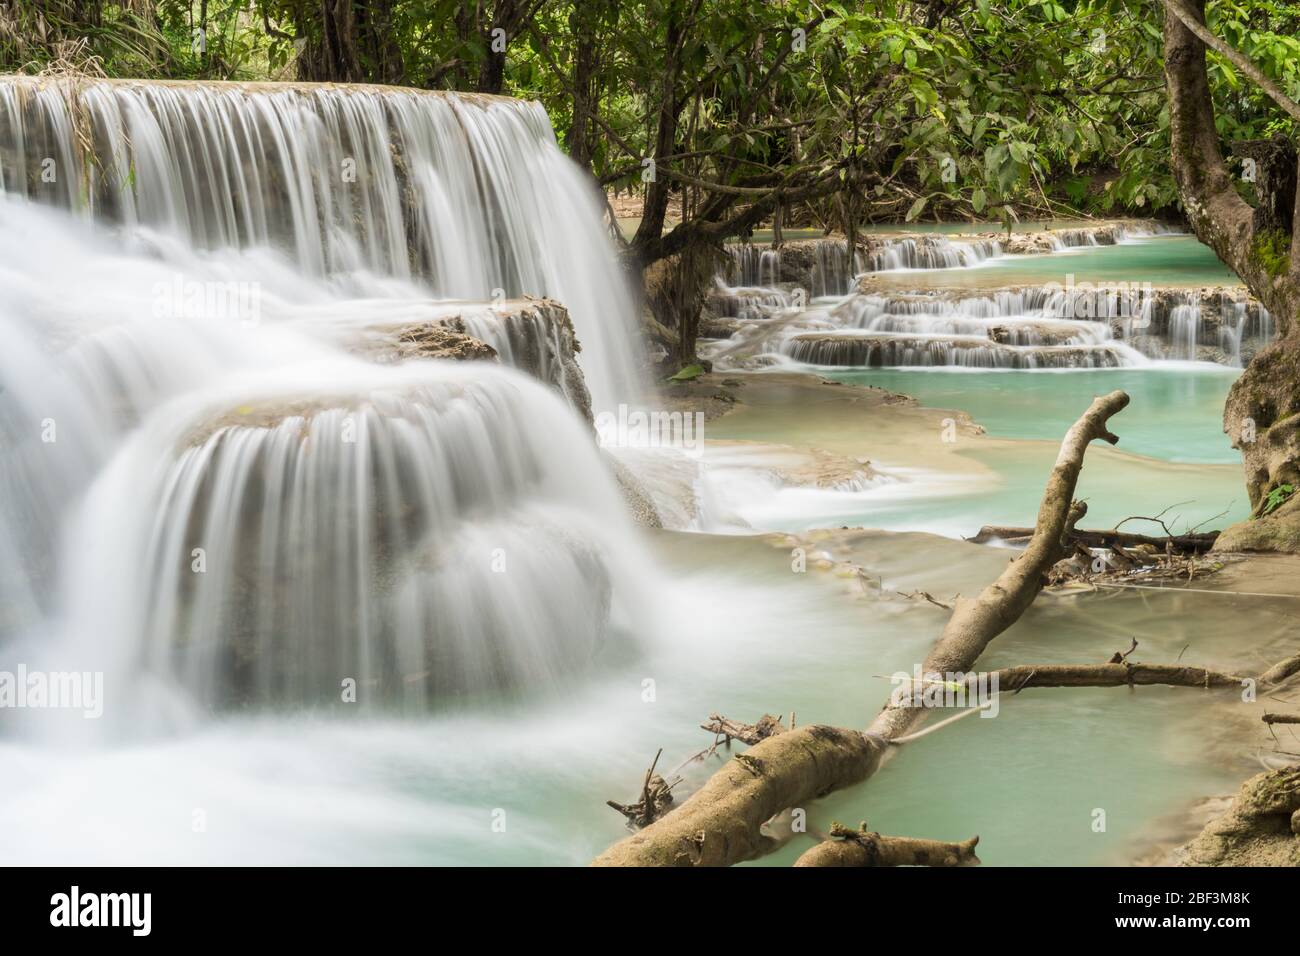 Kuang Si Waterfall near Luang Prabang, Laos Stock Photo